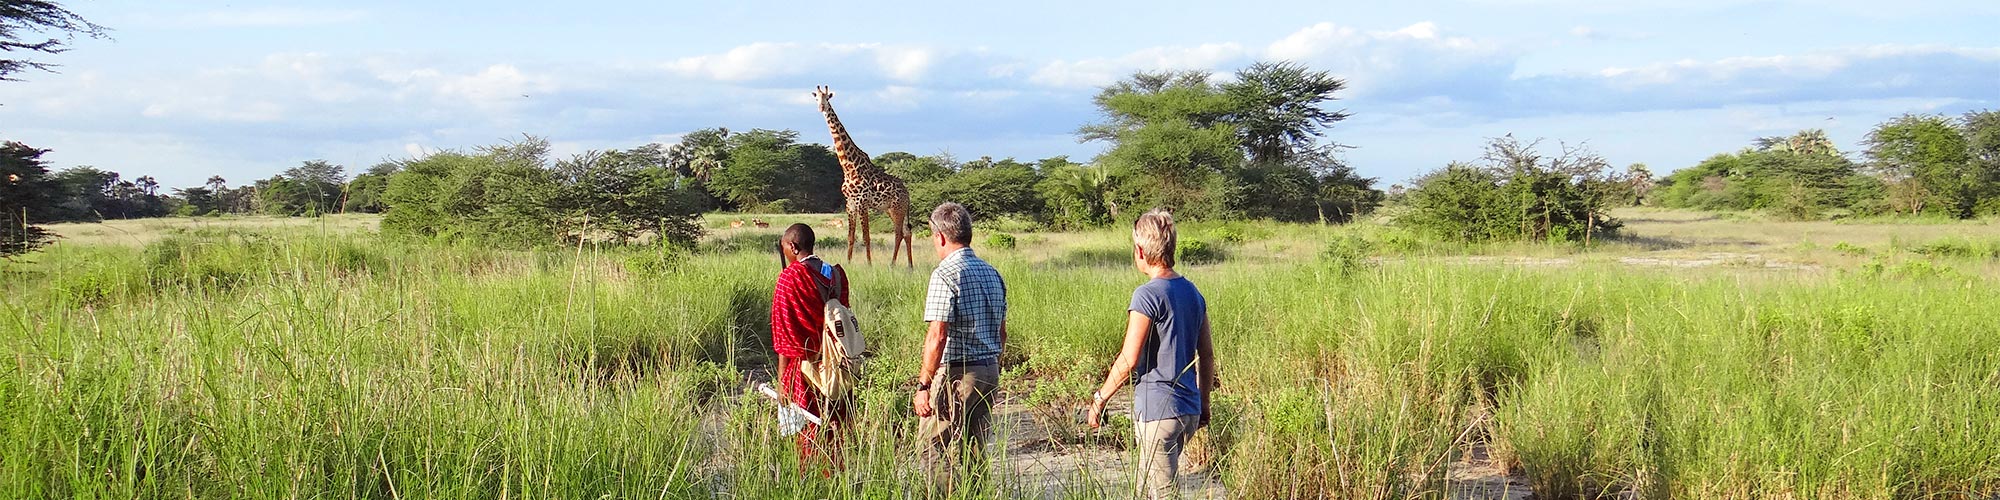 Fuss-Safari in Tansania / Naturreise in der Serengeti